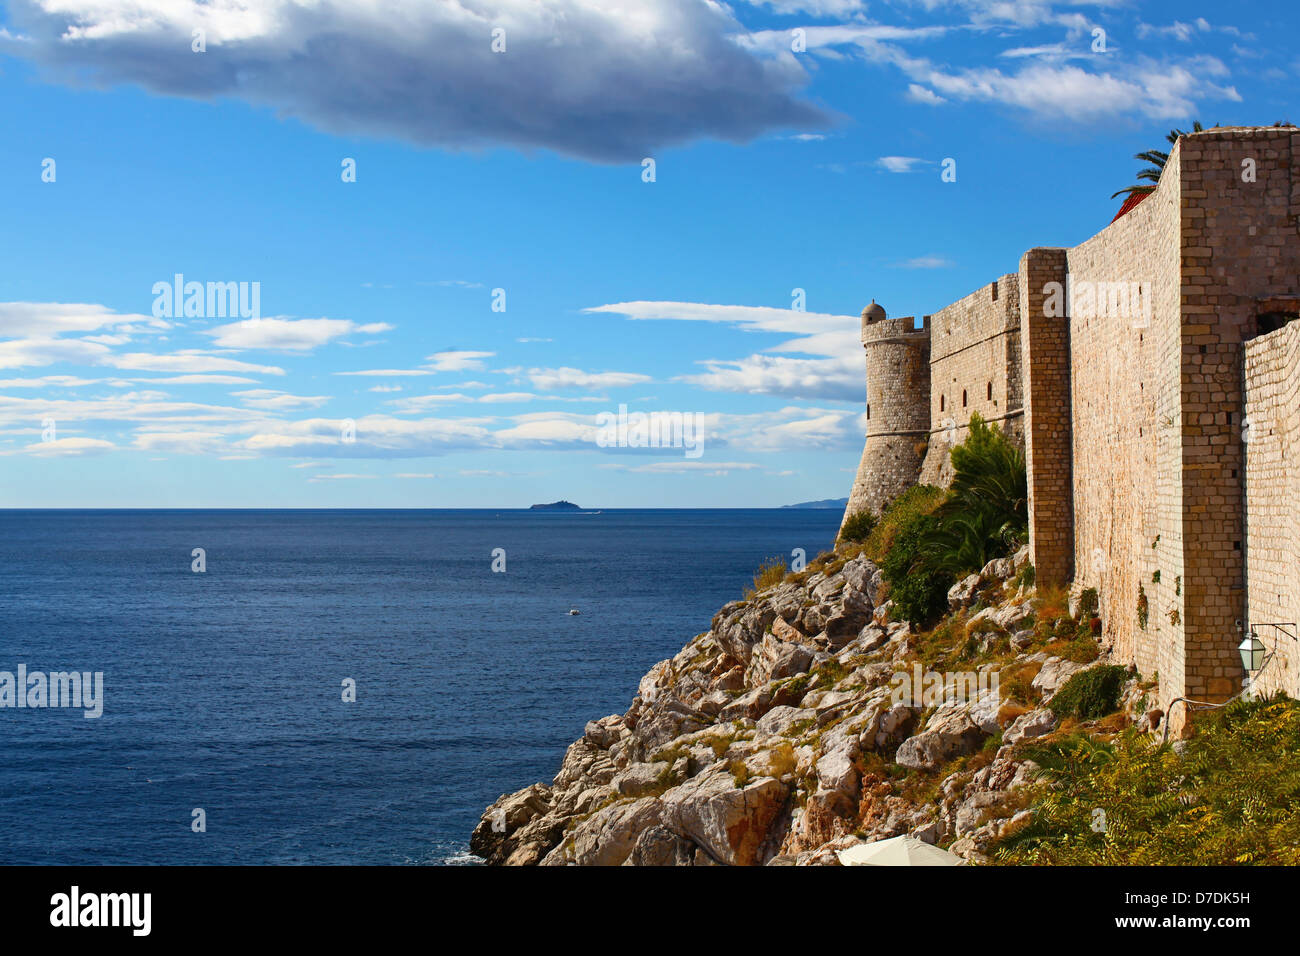 Muro di difesa della città vecchia di Dubrovnik in Croazia con una bellissima vista del mare adriatico Foto Stock